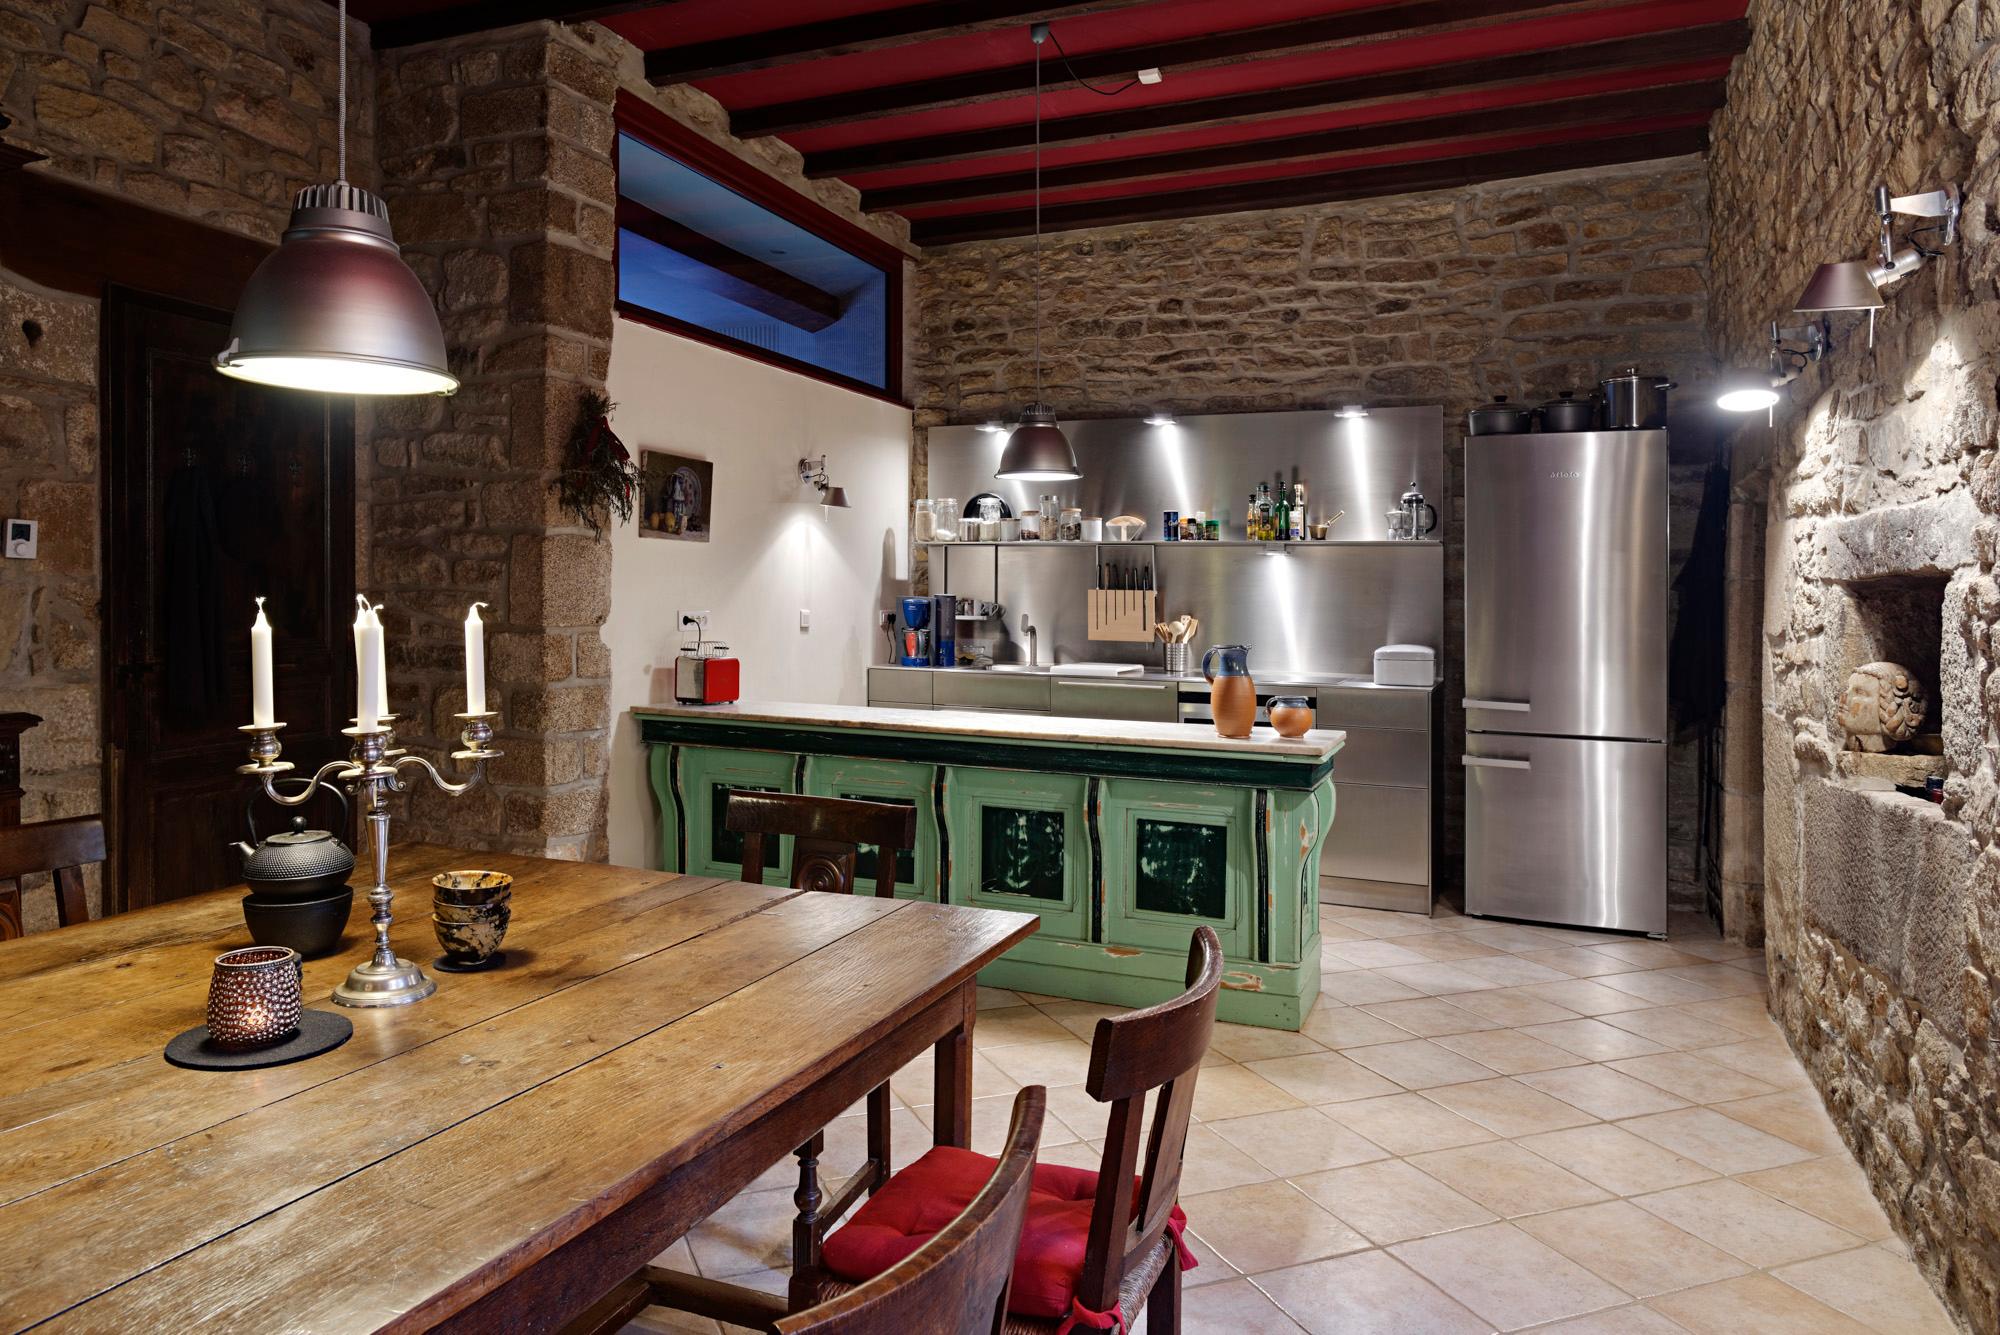 Designerküche rustikal #küche #stilmix ©architektur-photos.de